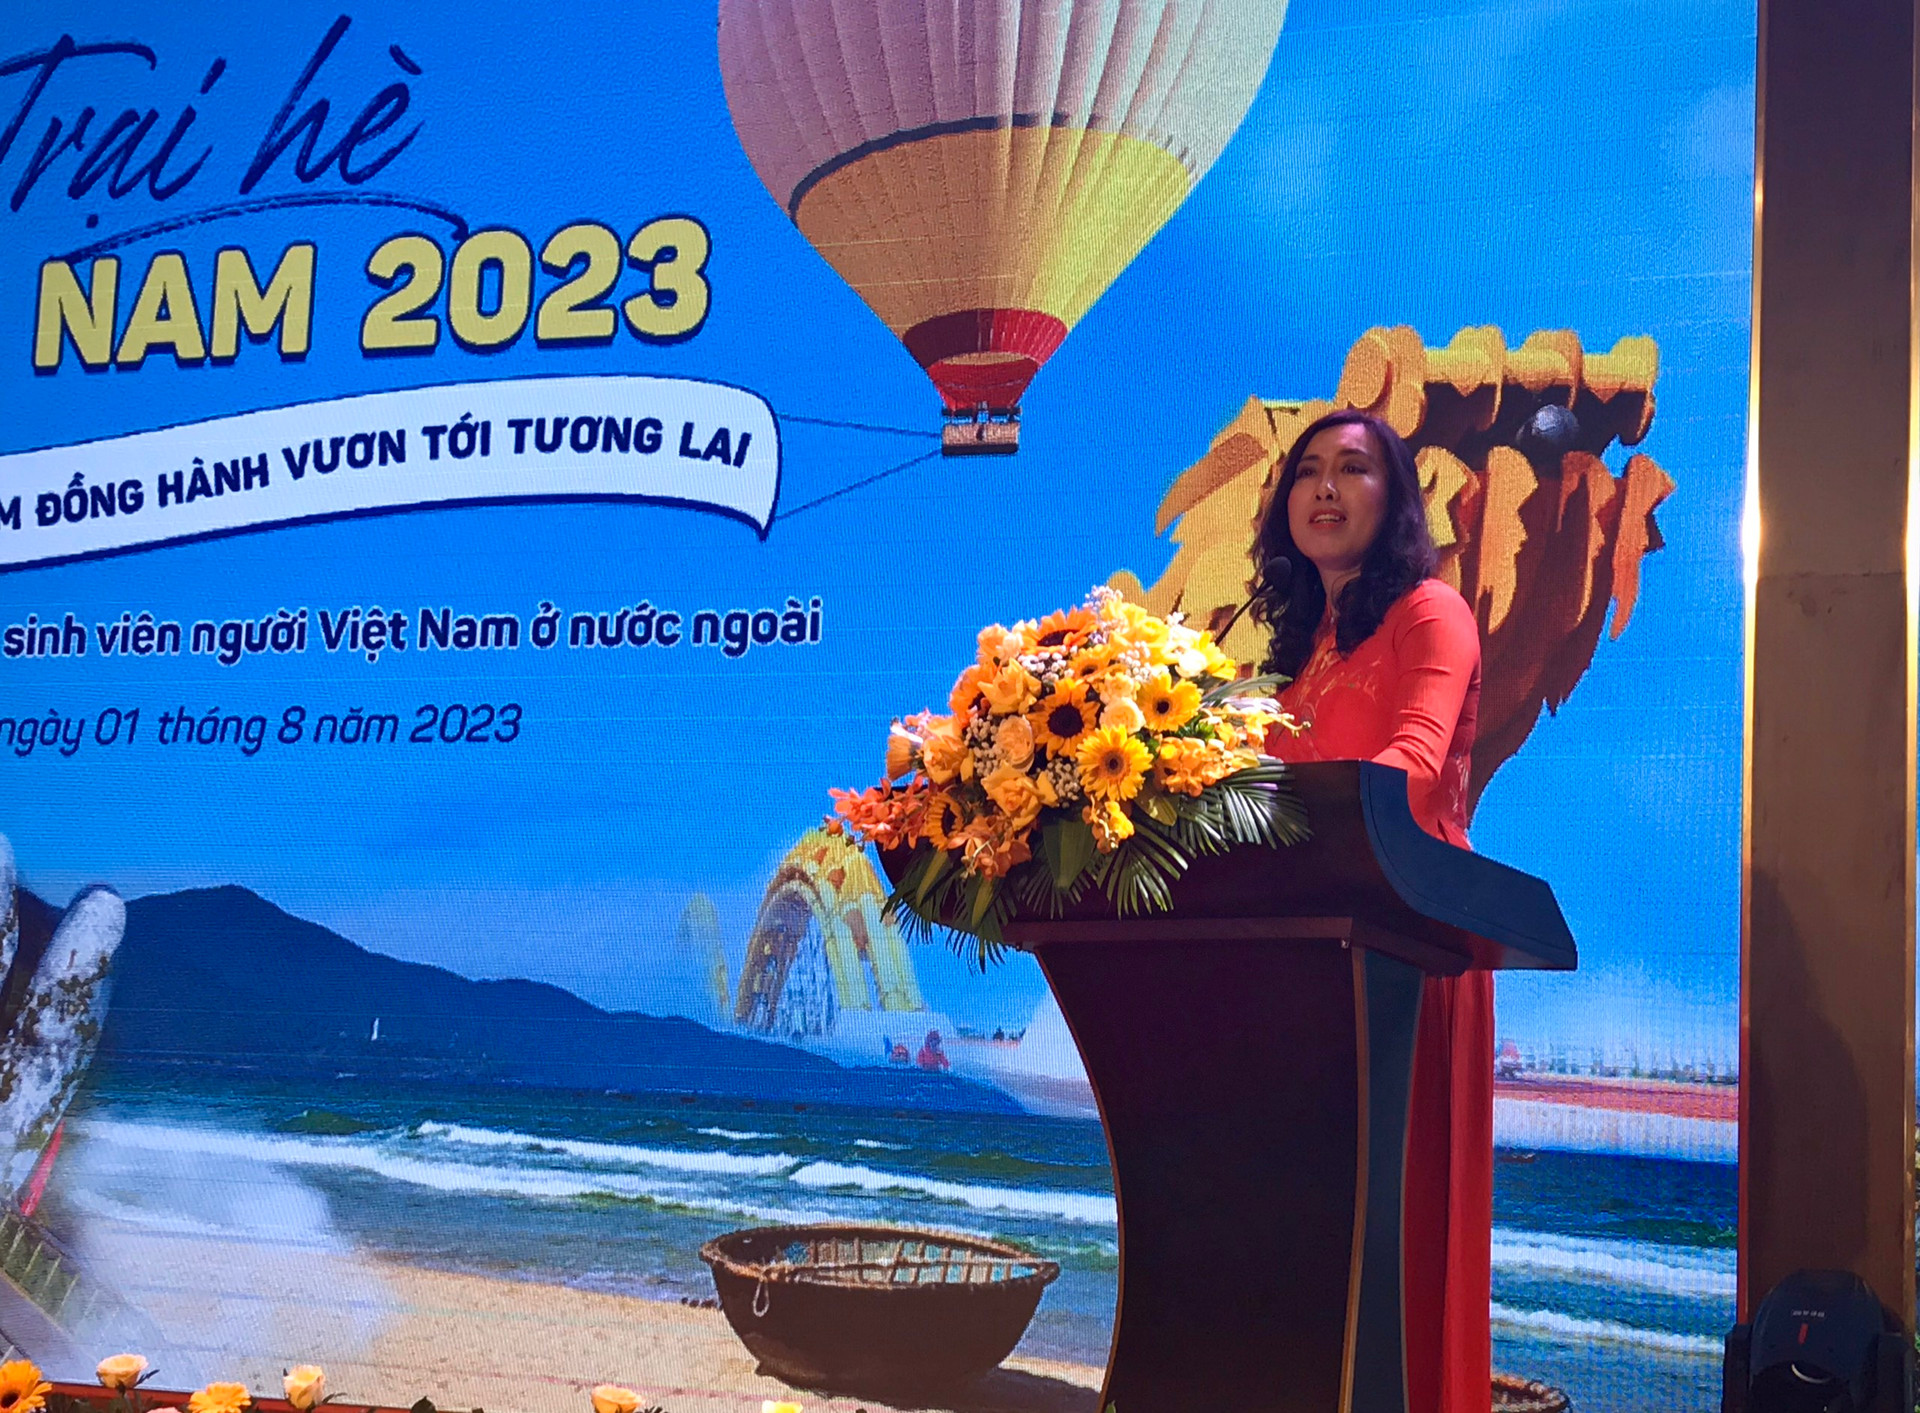 Trại hè Việt Nam 2023: Kết nối thanh niên kiều bào với nguồn cội, văn hóa Việt Nam - ảnh 5